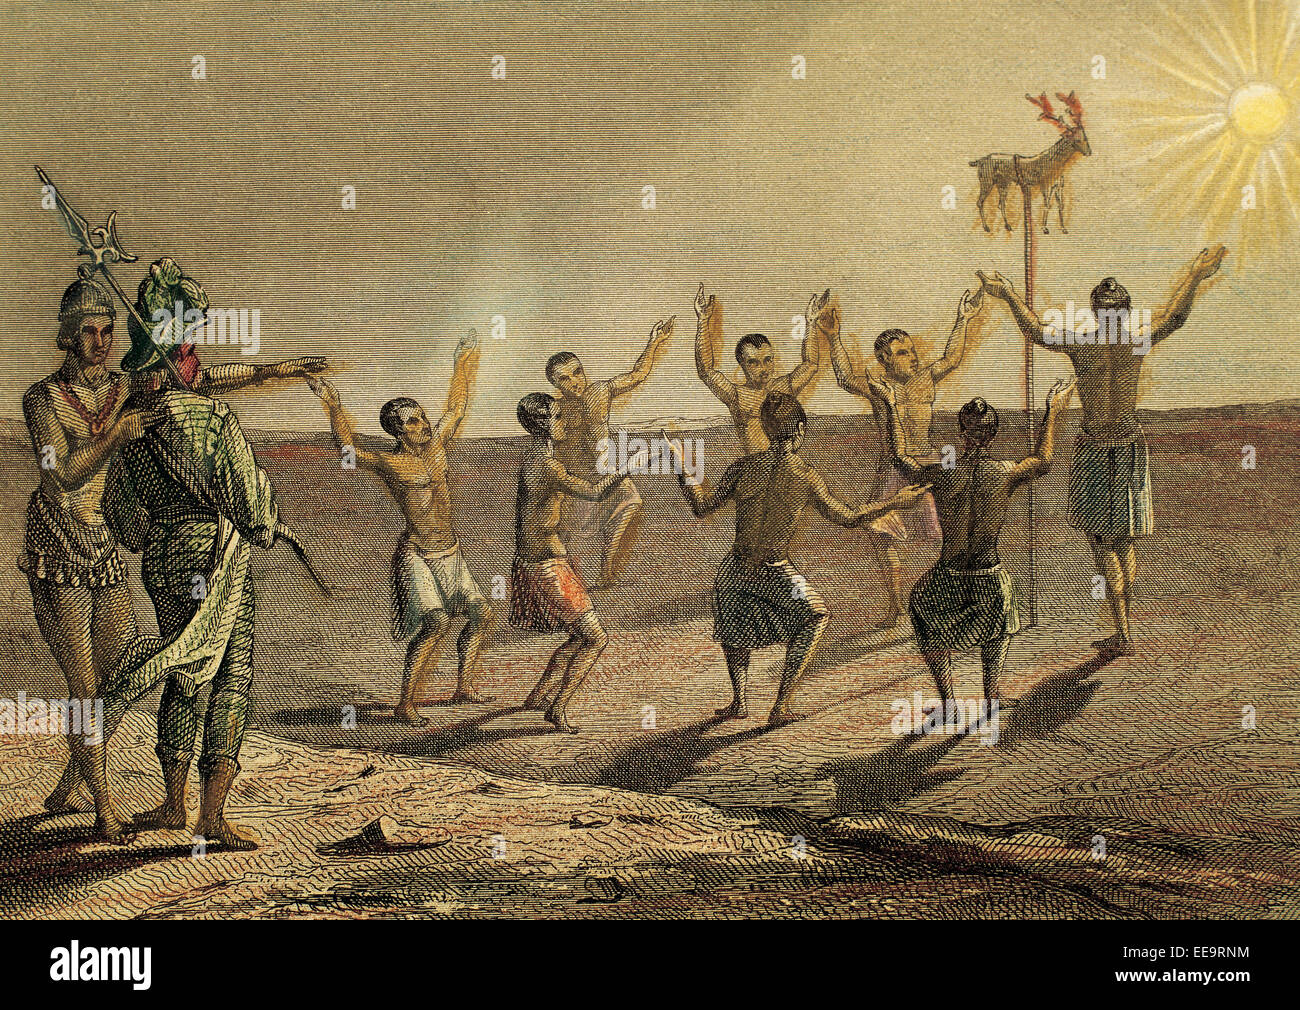 Amerika. Florida. 16. Jahrhundert. Ritual der Sonnengott gewidmet. Hirschleder zu opfern. Kupferstich, 1850. Farbe. Stockfoto